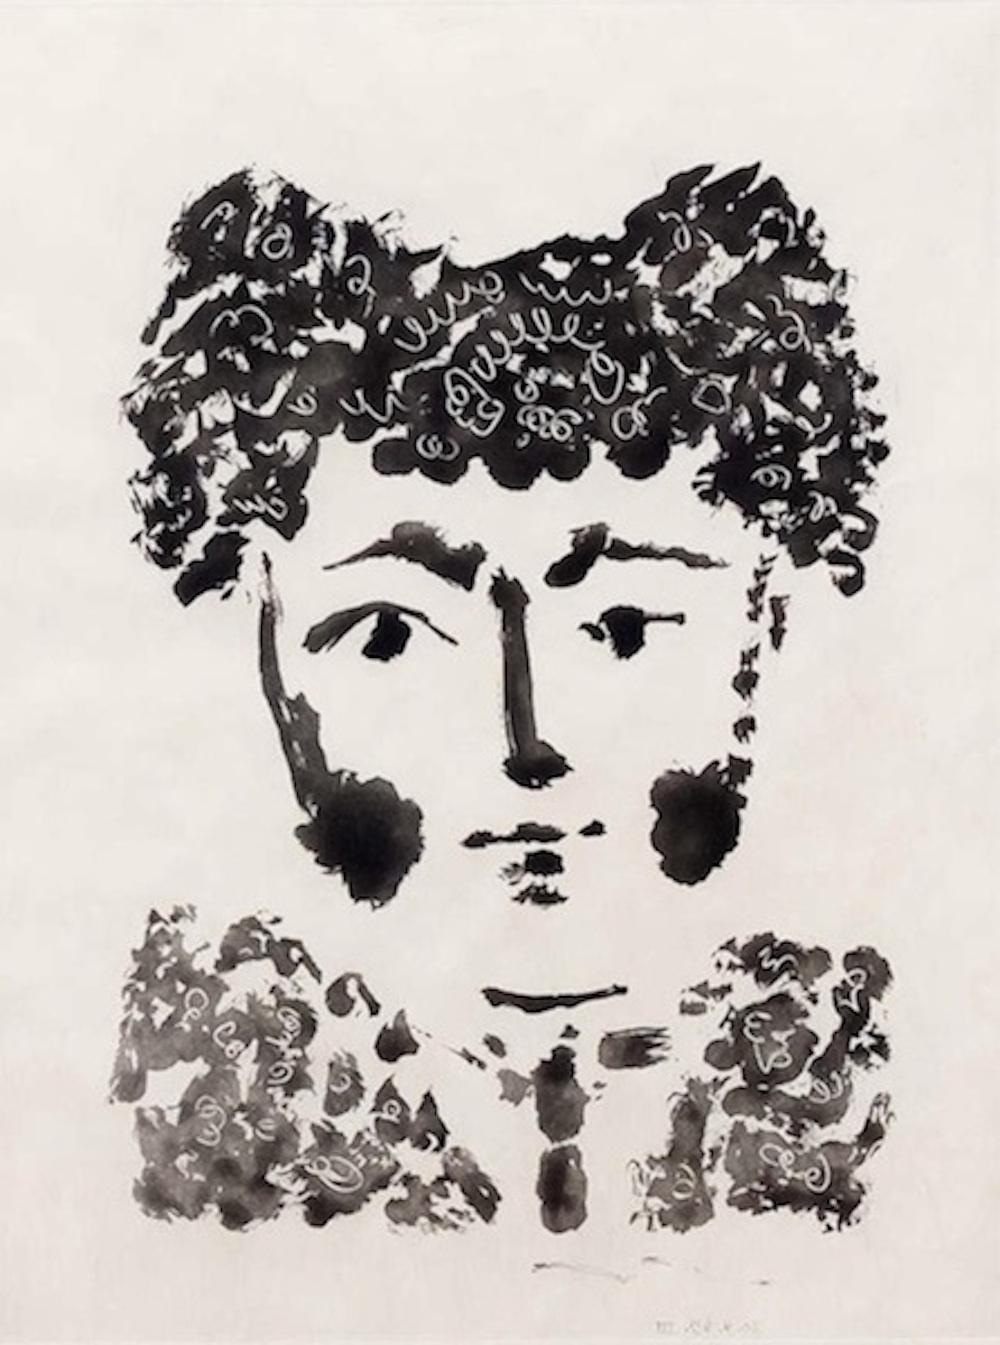 Pablo Picasso Portrait Print - Torero, from "Le Carmen des Carmen"